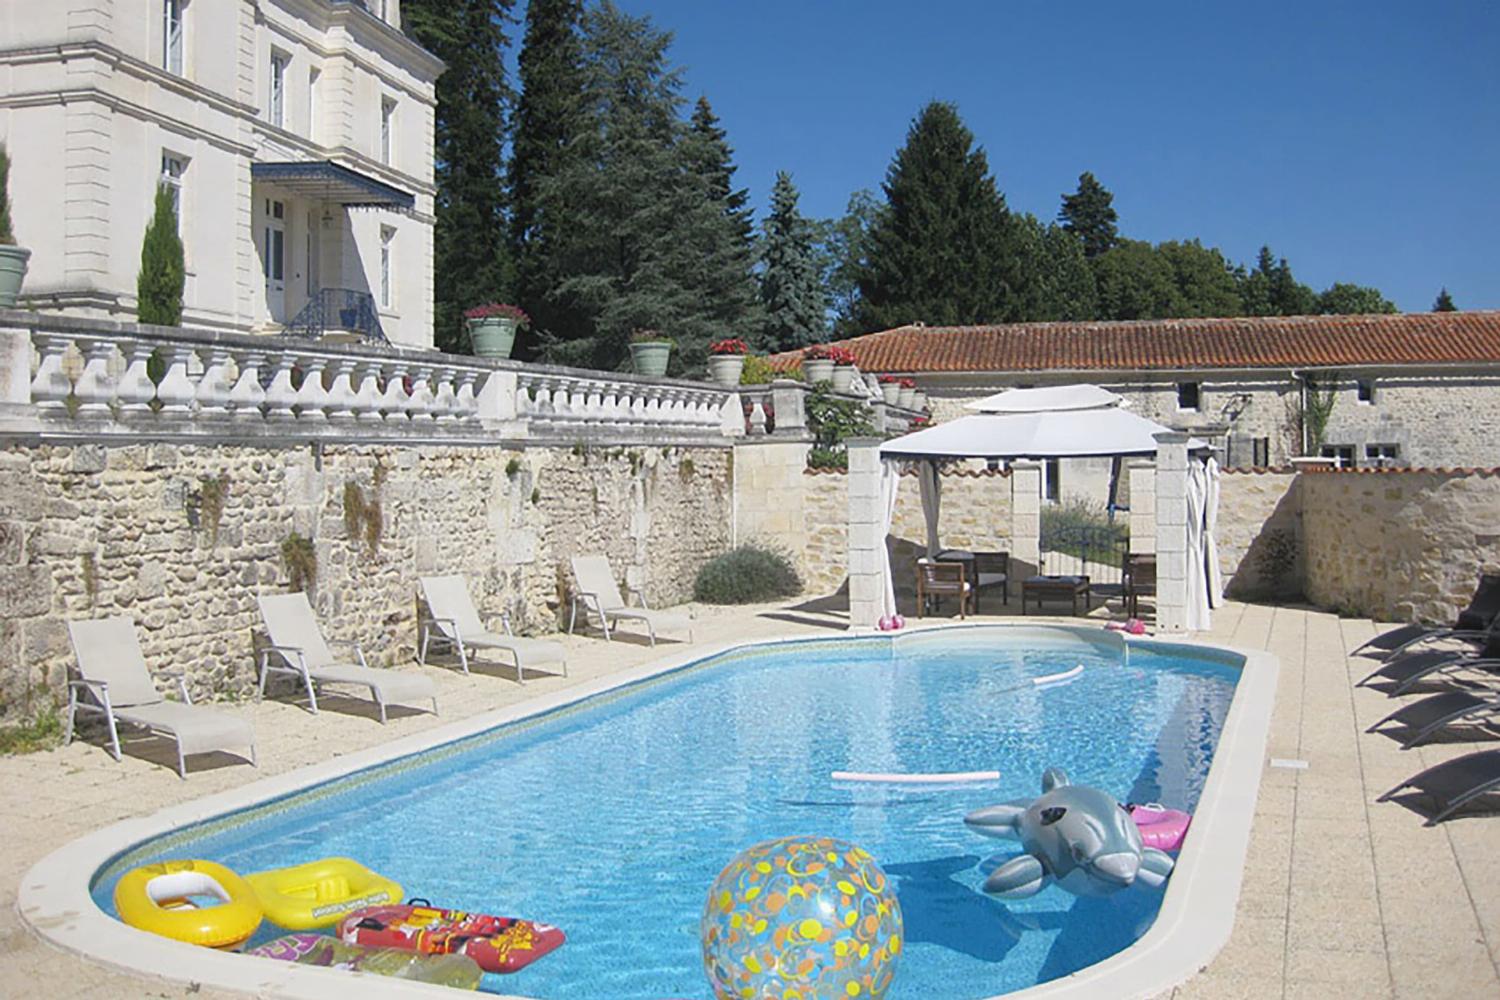 Château de vacances en Charente avec piscine privée chauffée